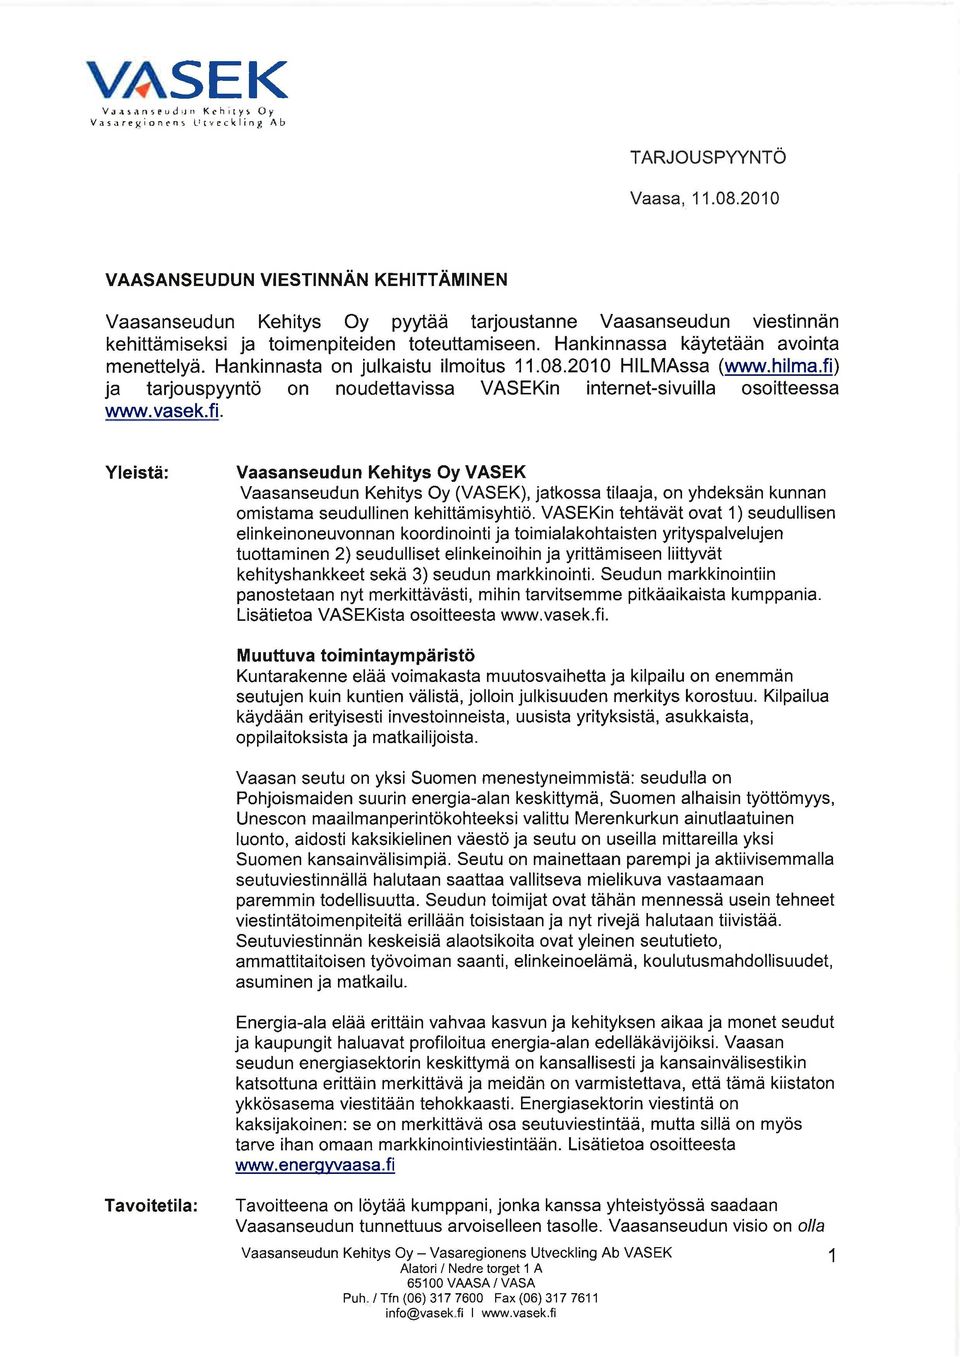 Hankinnasta on julkaistu ilmoitus 11.08.2010 HlLMAssa (www.hilma.fi)